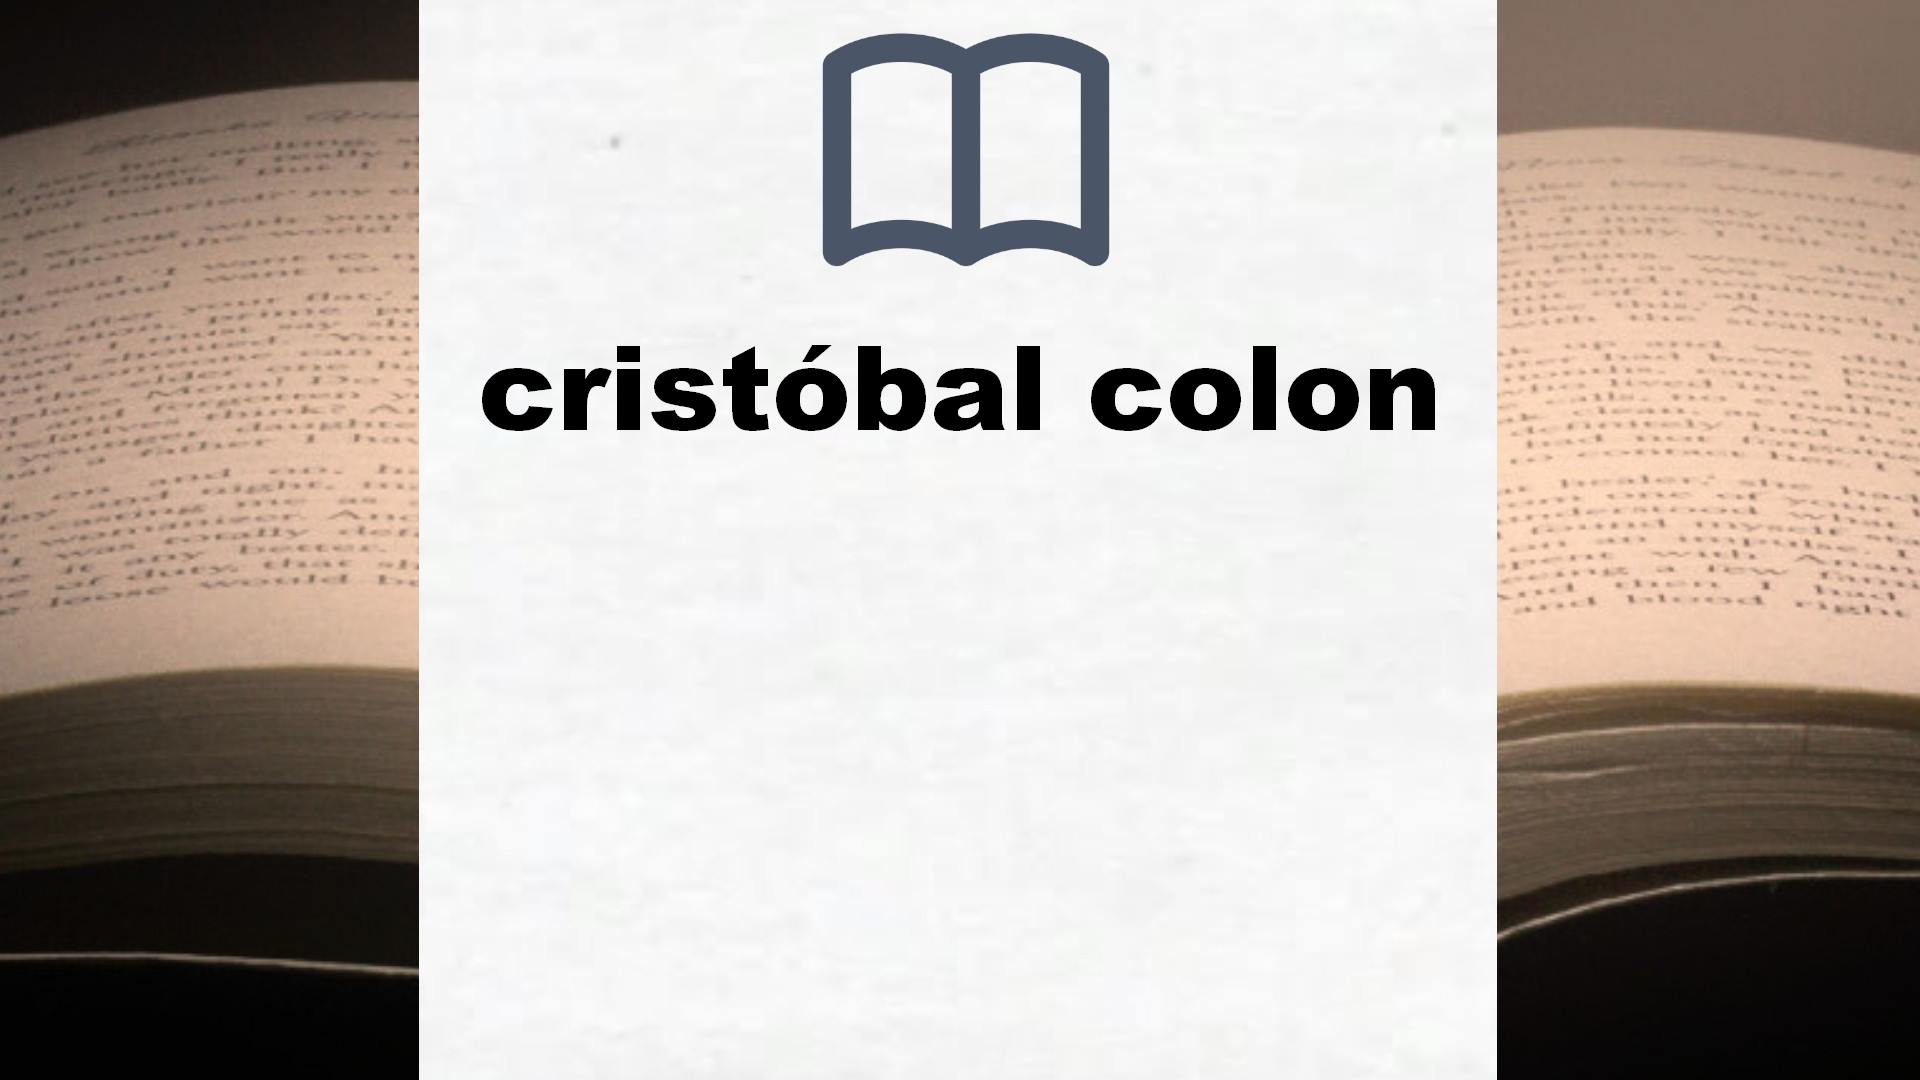 Libros sobre cristóbal colon